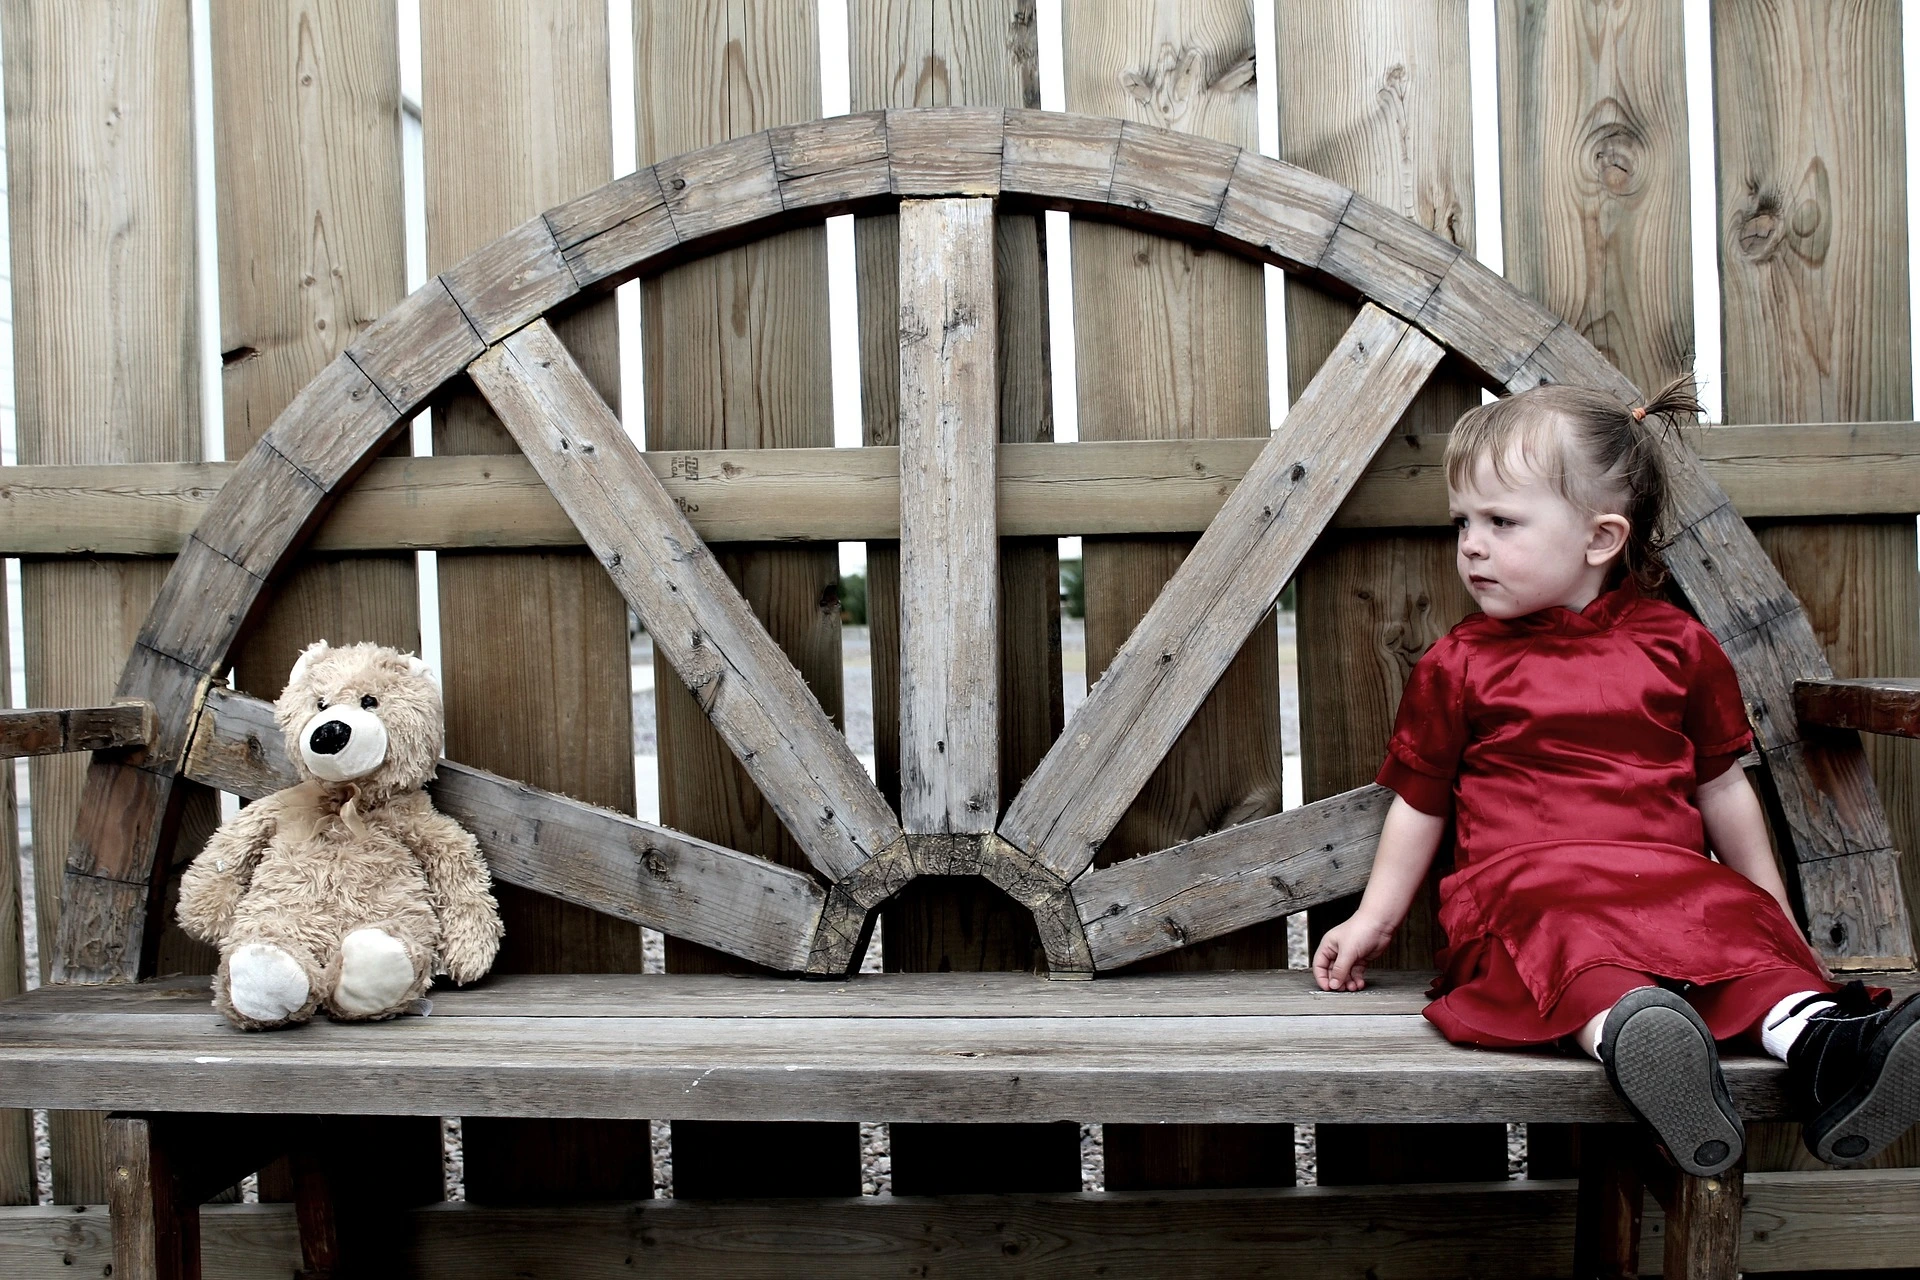 O fetita îmbrăcată intr-o rochie roșie, sta pe o banca la o distanta mică de un ursuleț de plus uitându-se spre el.